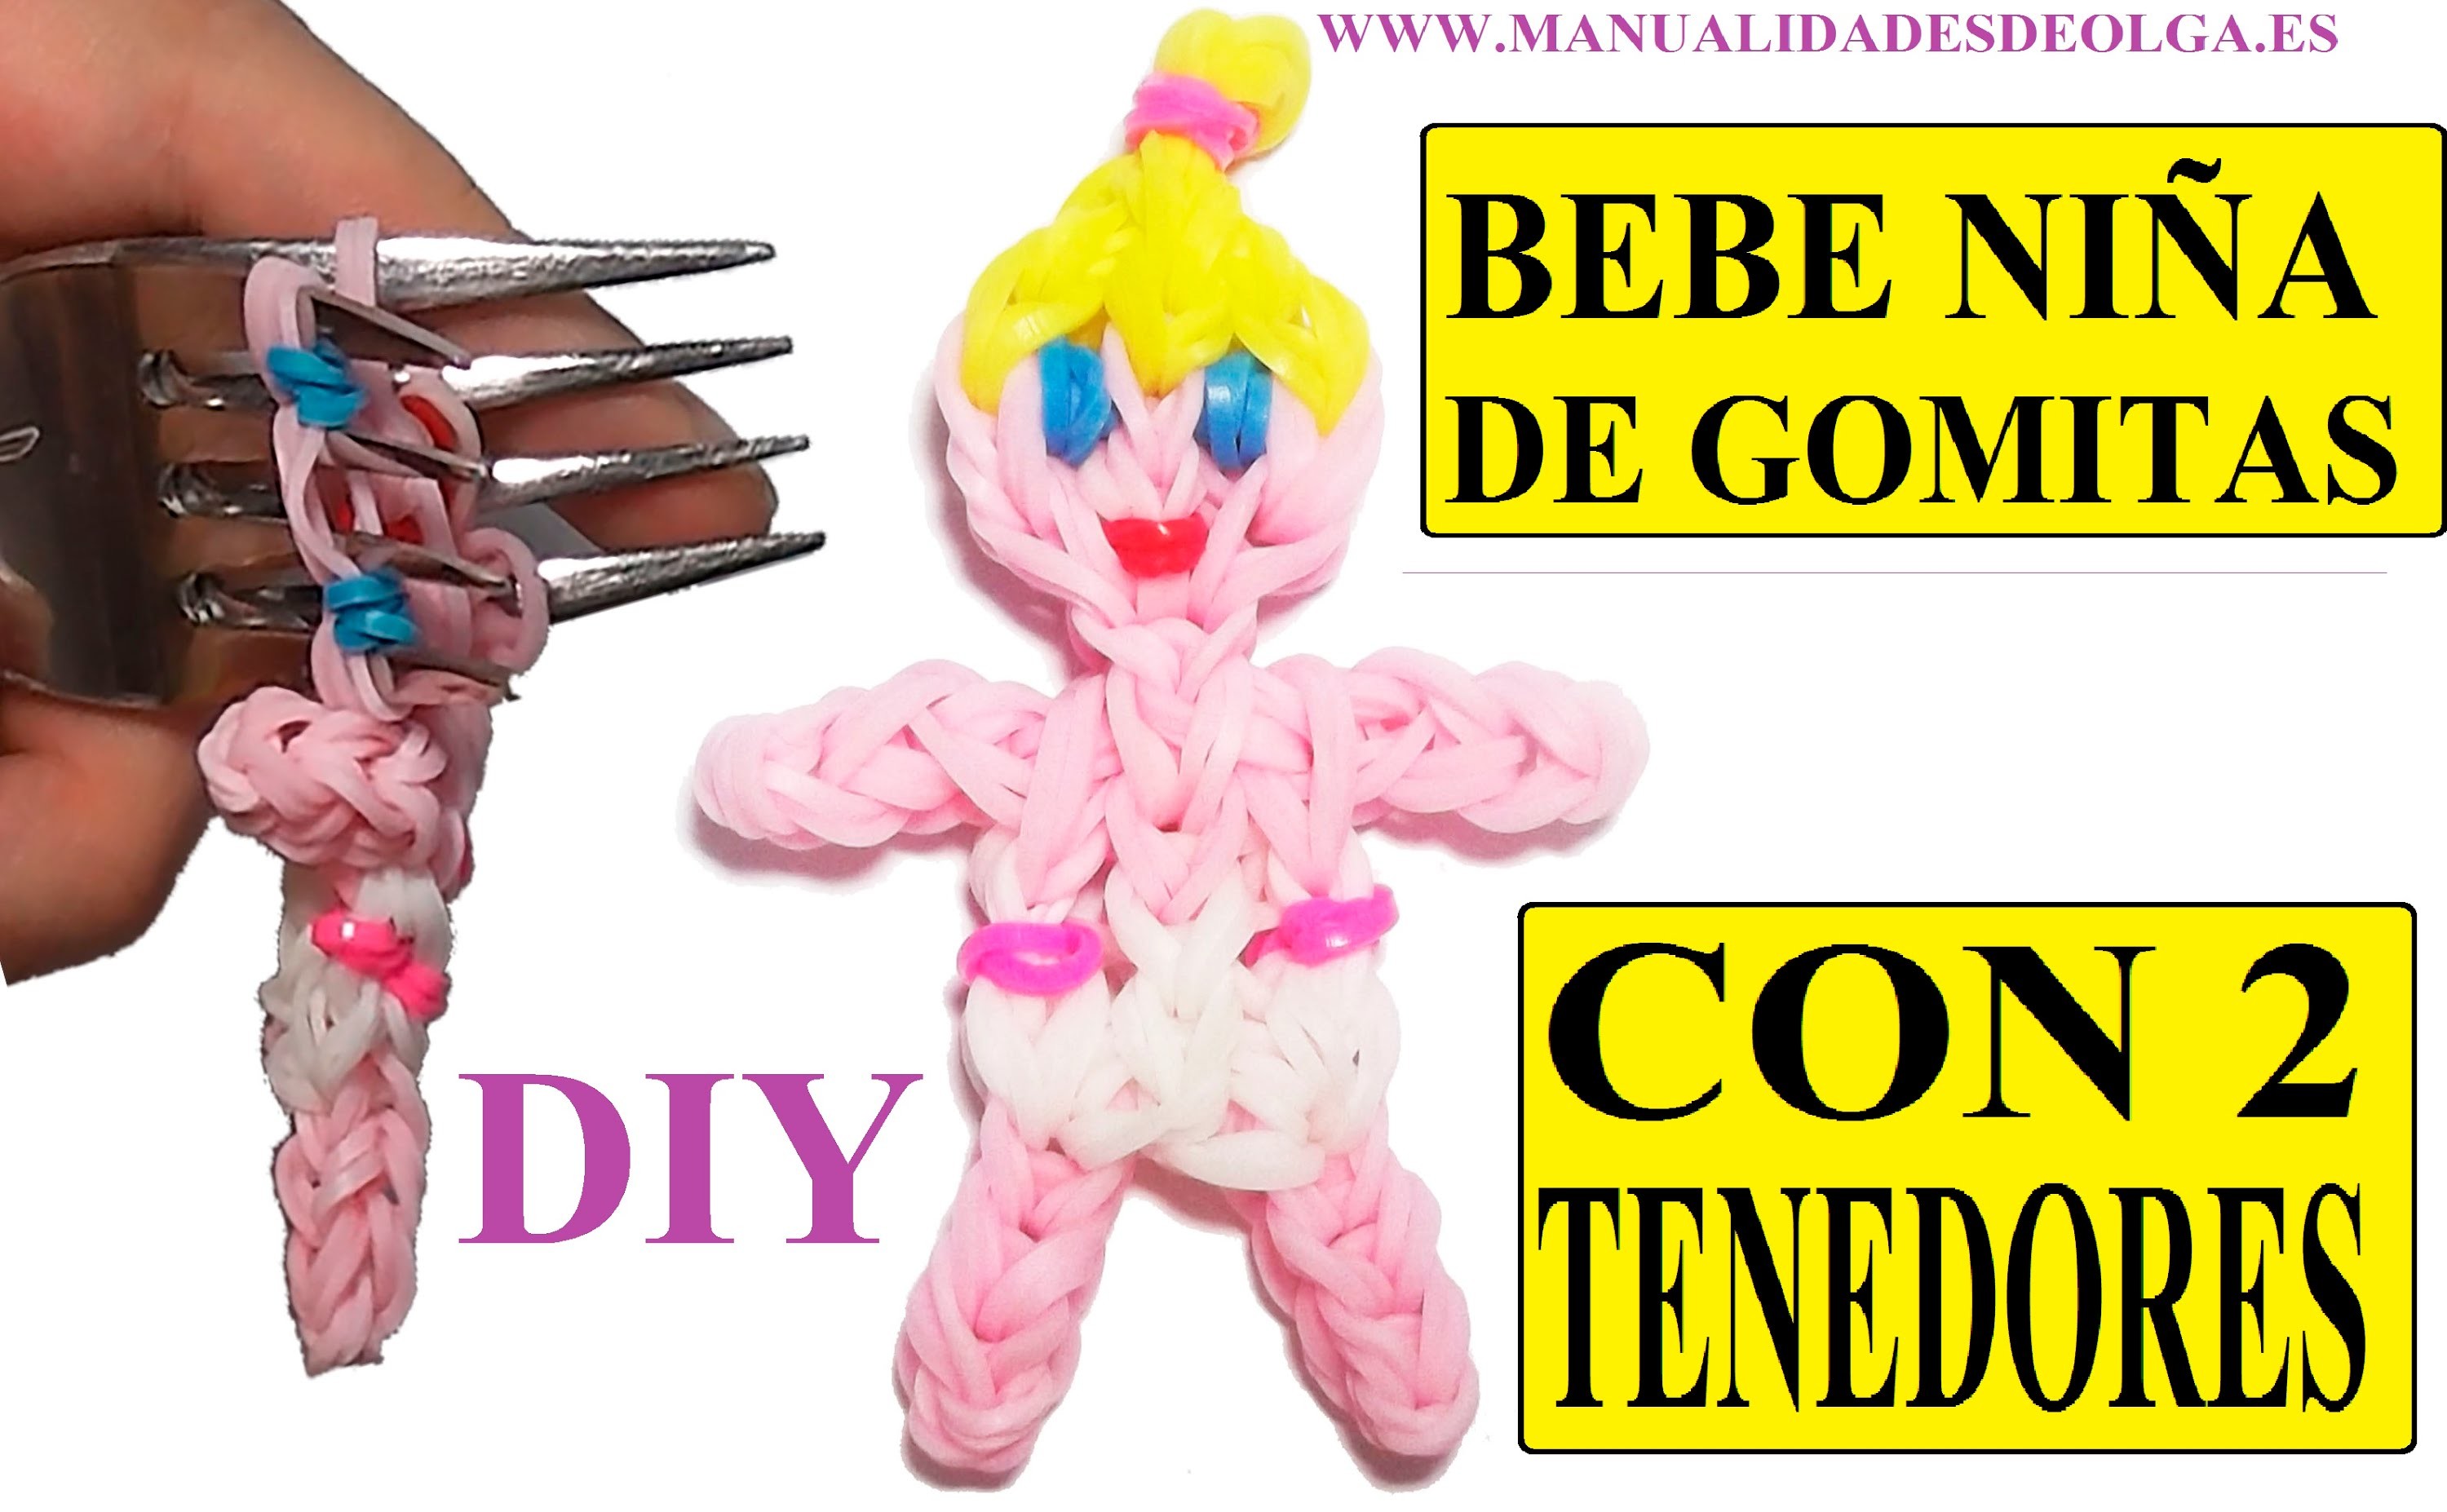 COMO HACER UNA BEBE NIÑA DE GOMITAS (BABY GIRL CHARM) CON DOS TENEDORES. TUTORIAL DIY